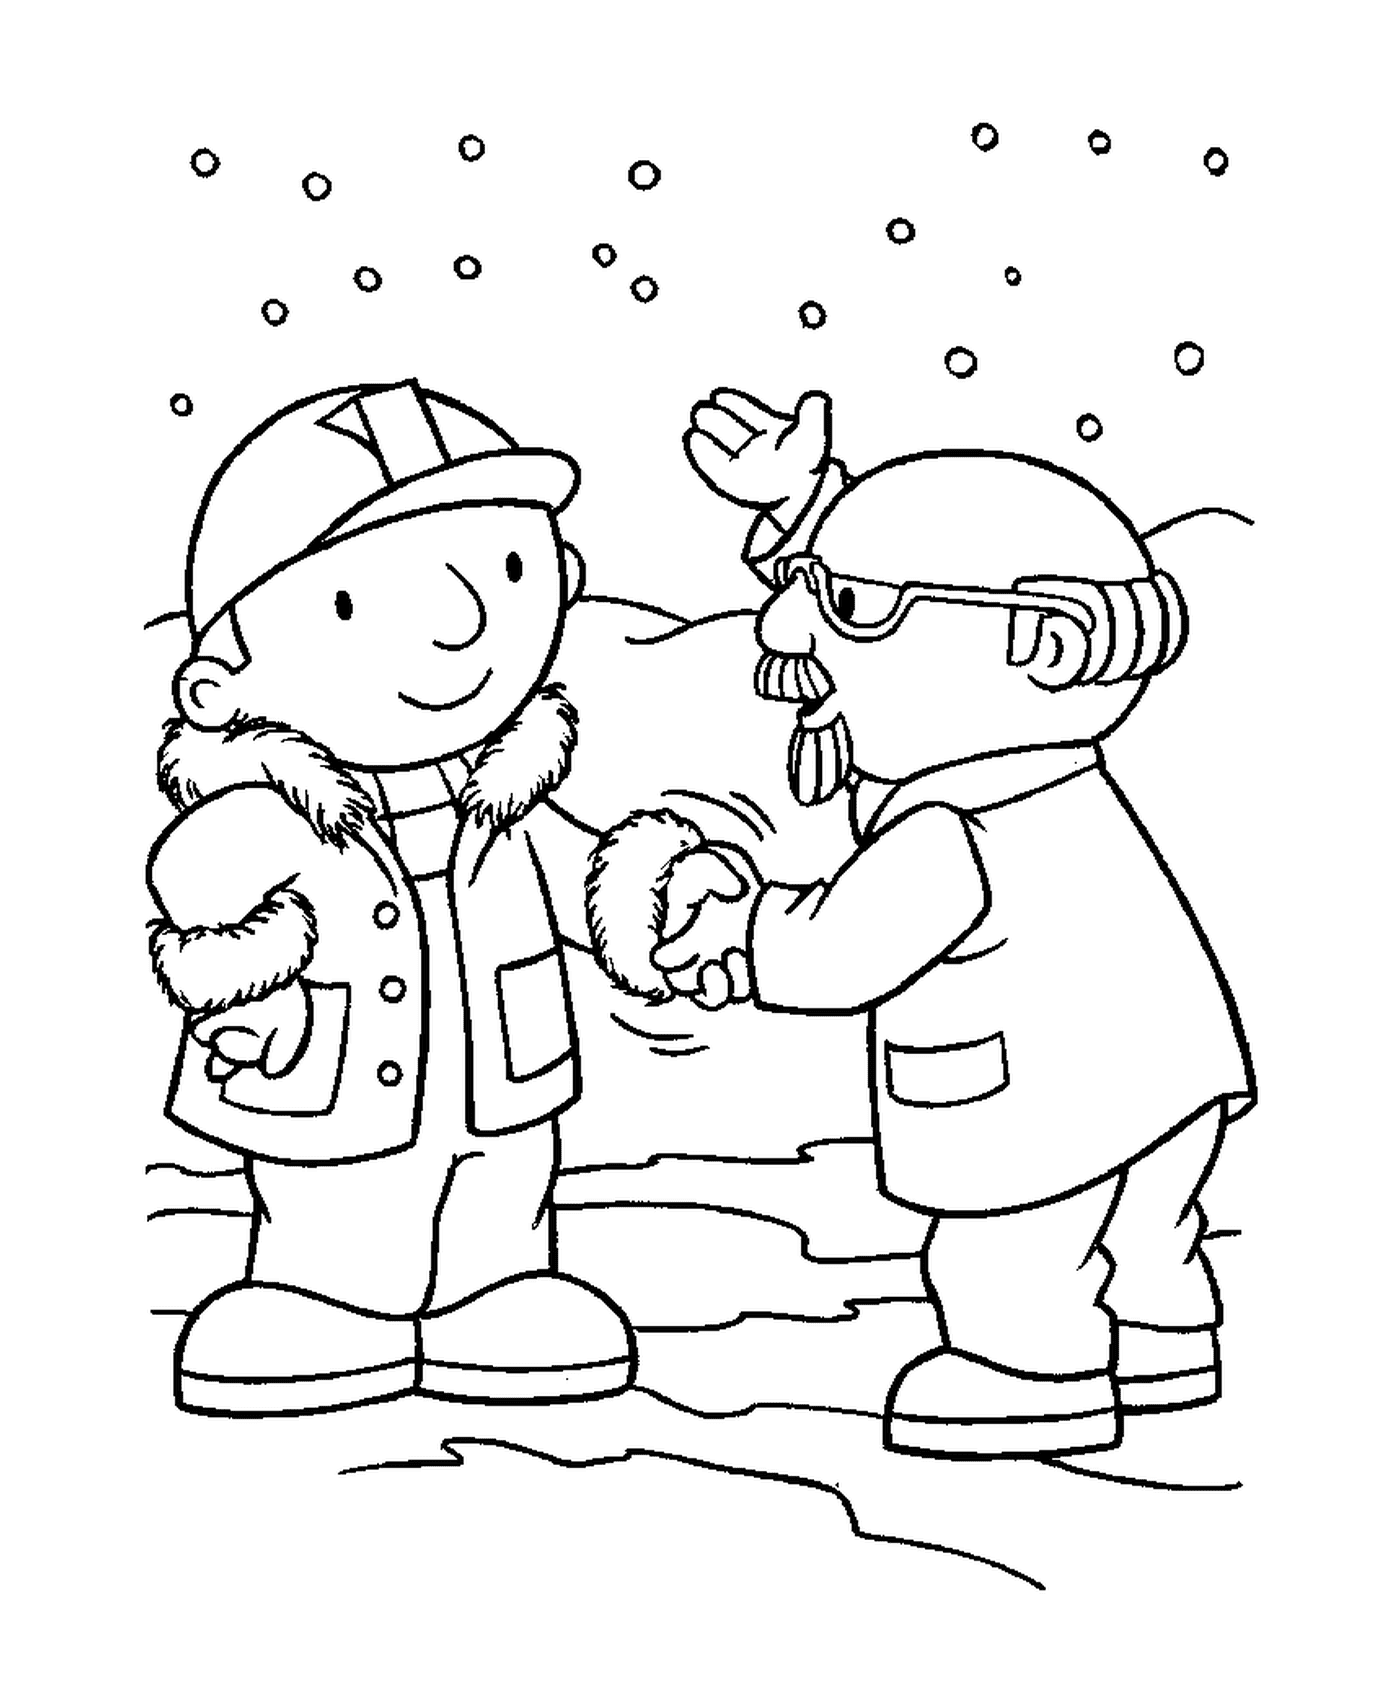  Два человека пожимают руки в снегу 